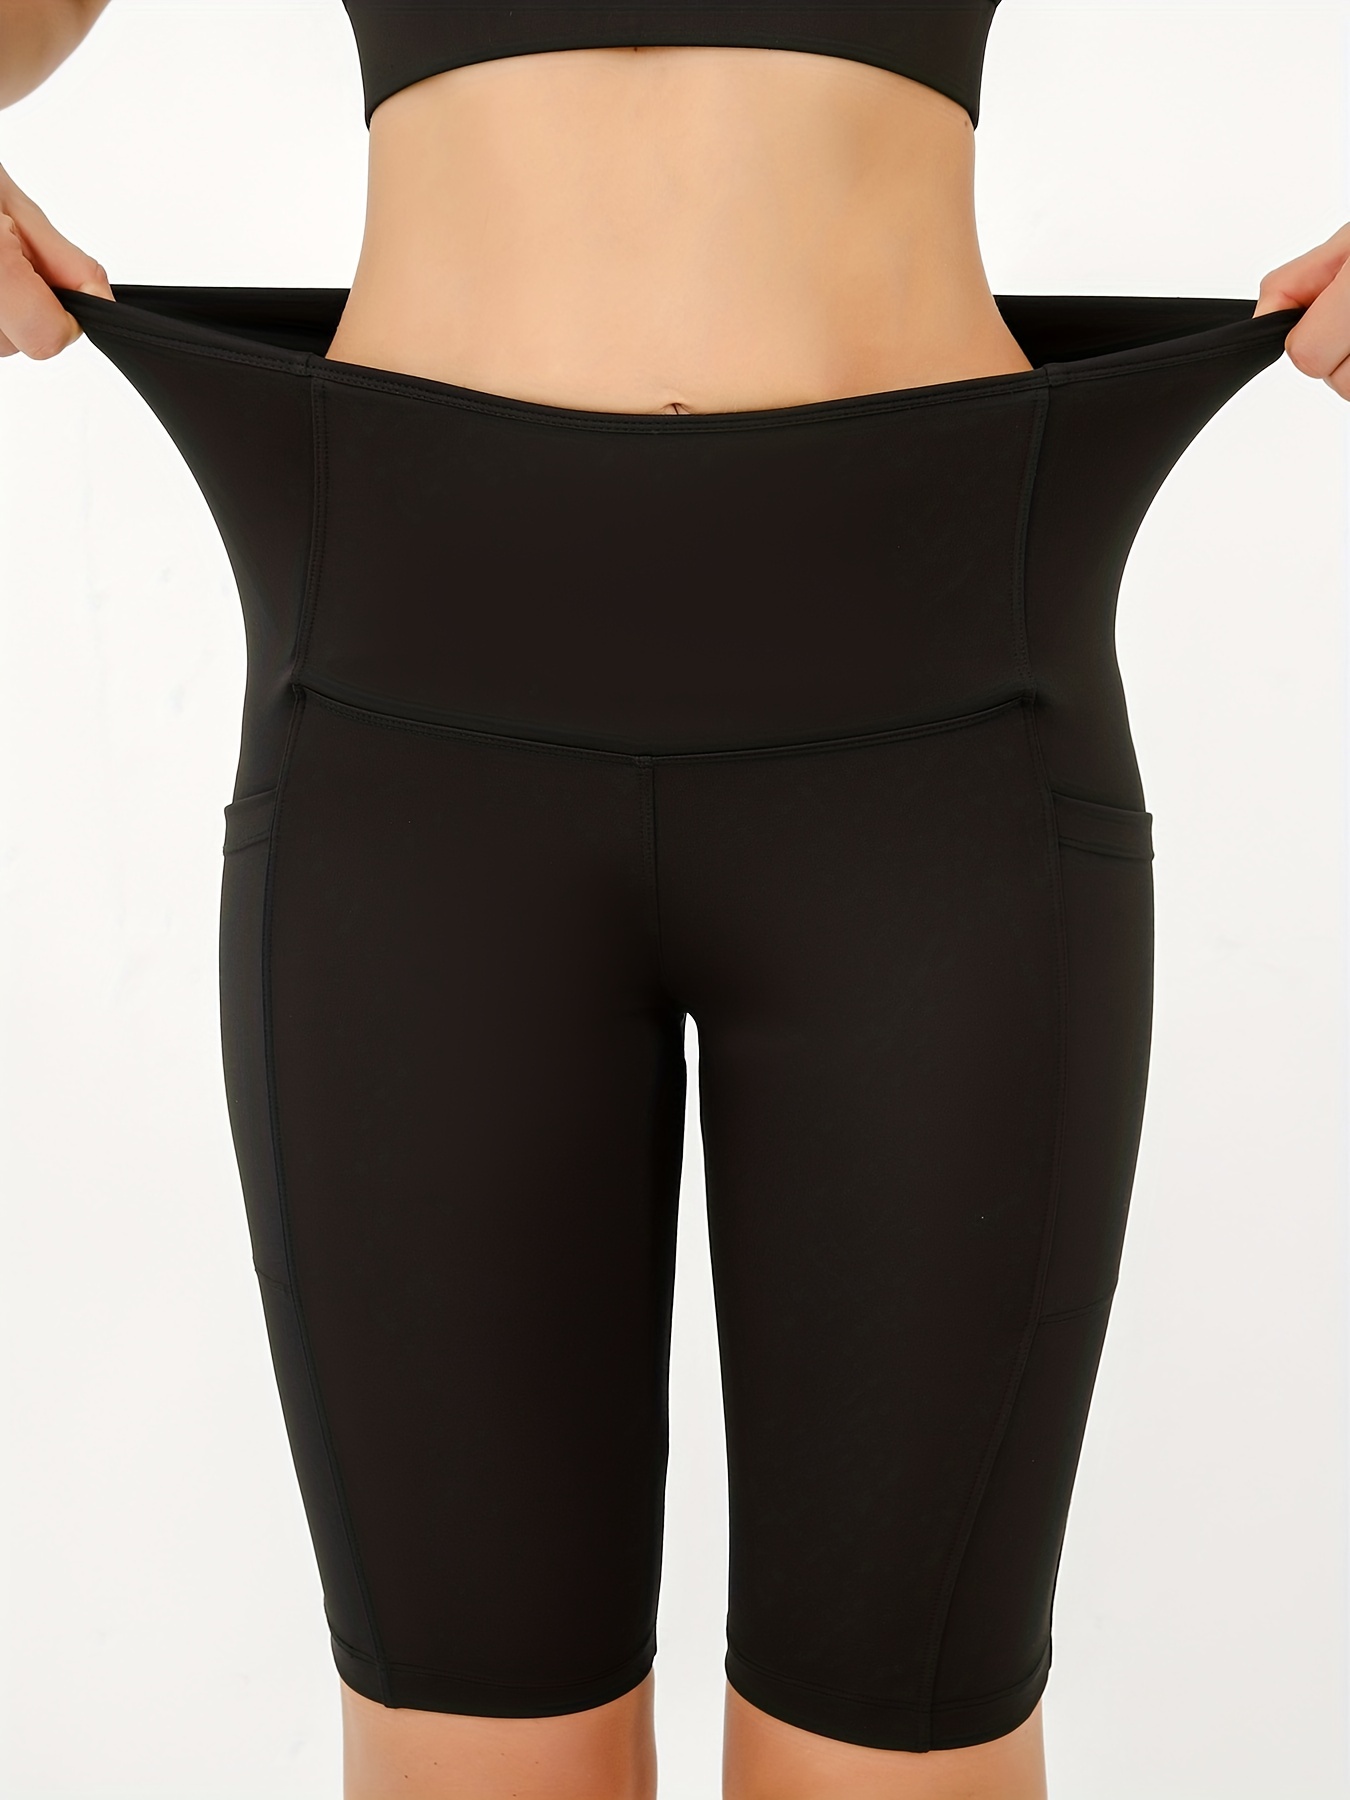 Women Black High Waisted Yoga Shorts Size Large Side Pockets 